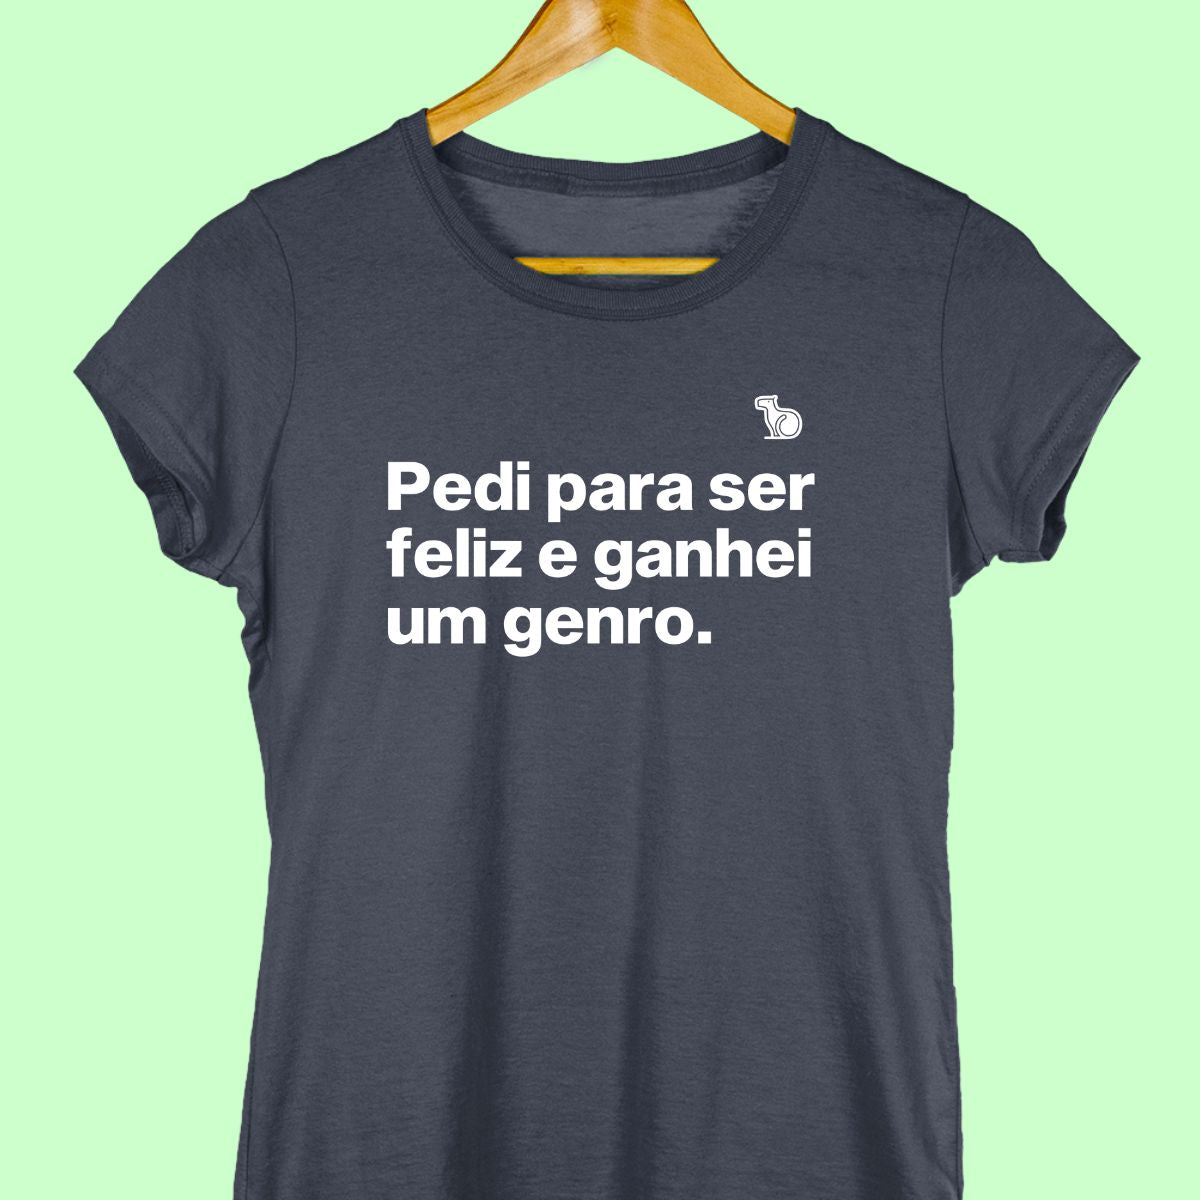 Camiseta com a frase "pedi para ser feliz e ganhei um genro." feminina azul.